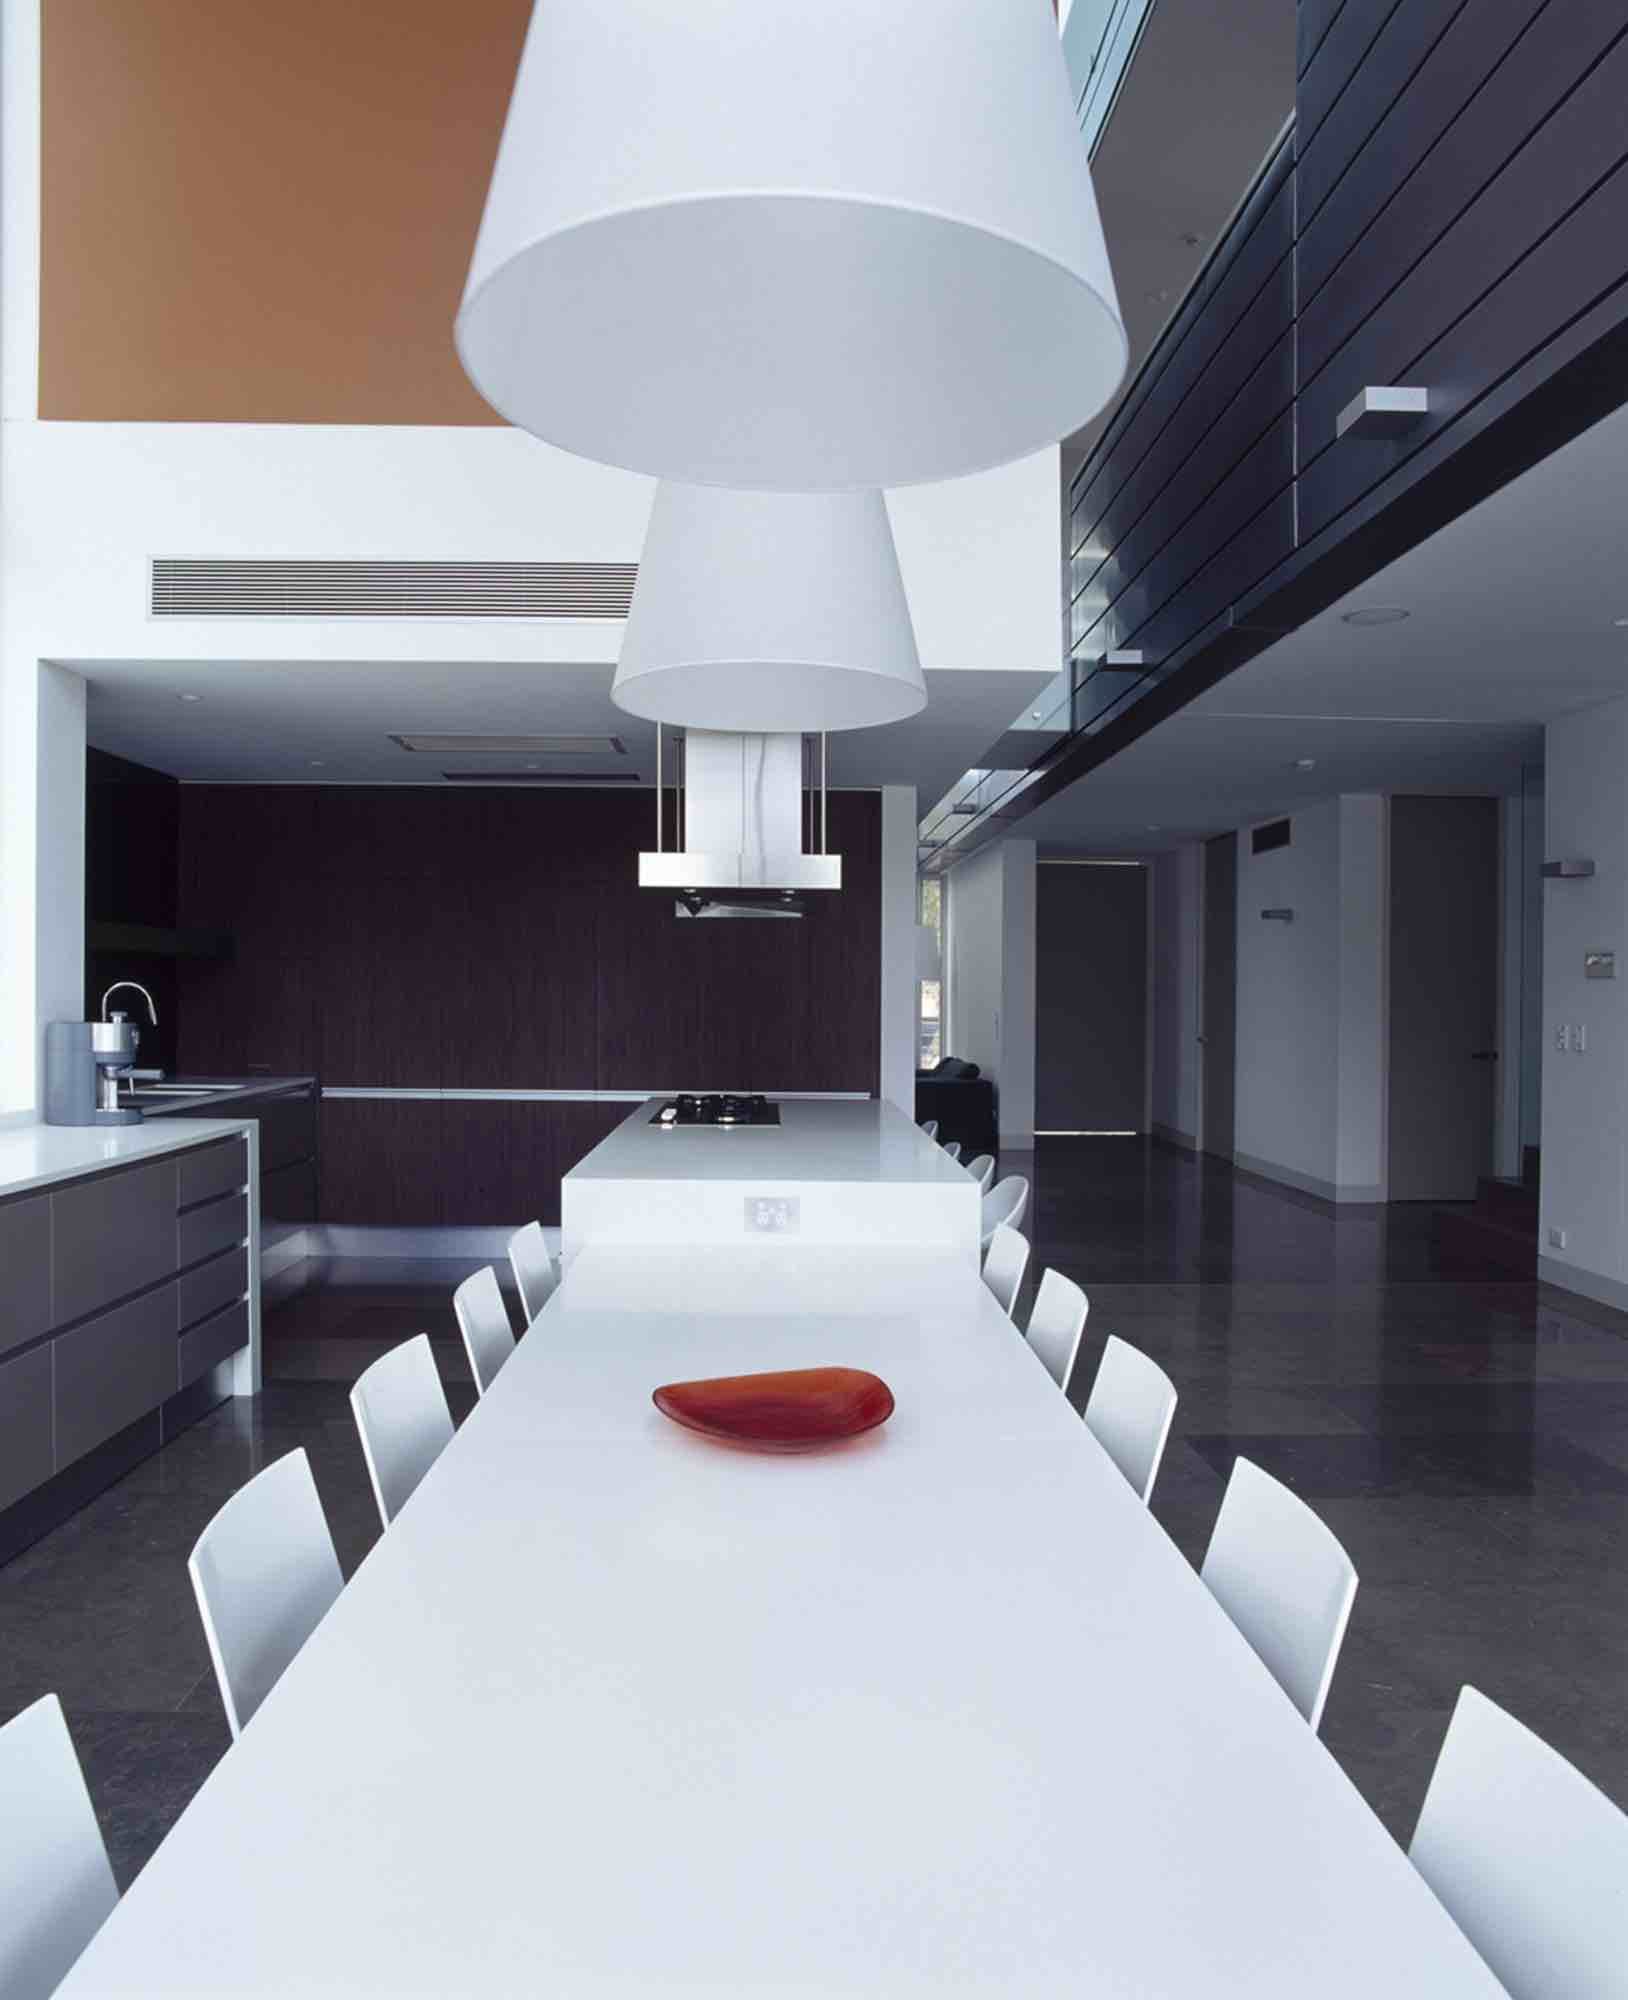 minosa-design-open-plan-high-ceiling-void-large-dinning-table-corian-benchtop-minosa-kitchen-gilda-08